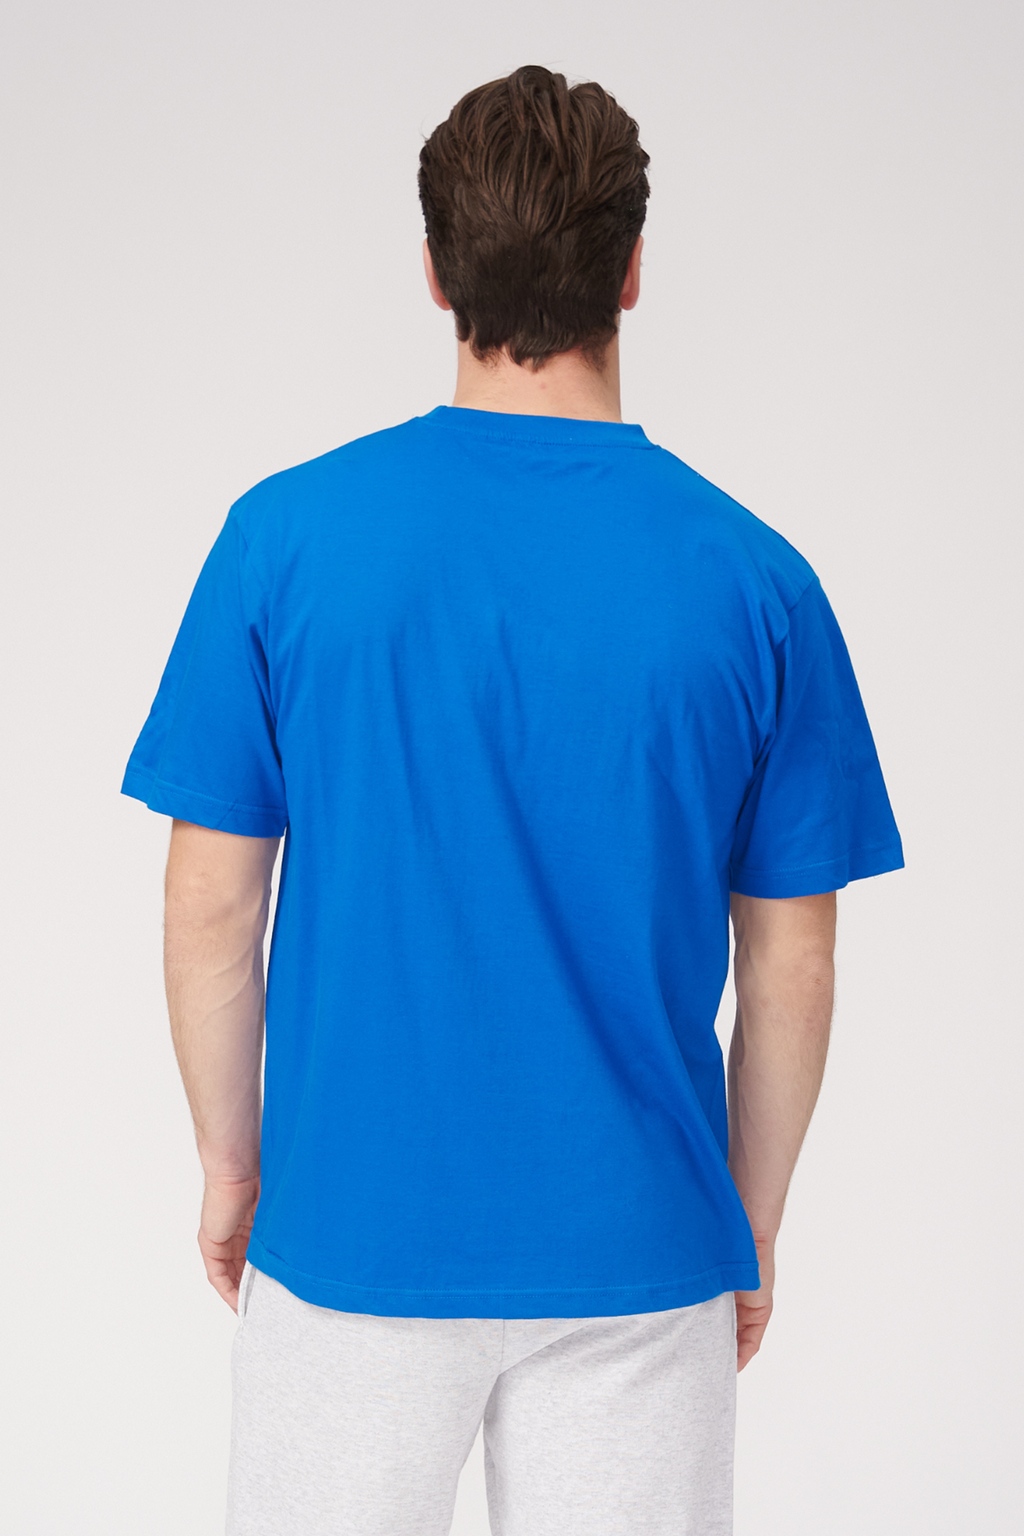 Oversized T-shirt - Swedish Blå